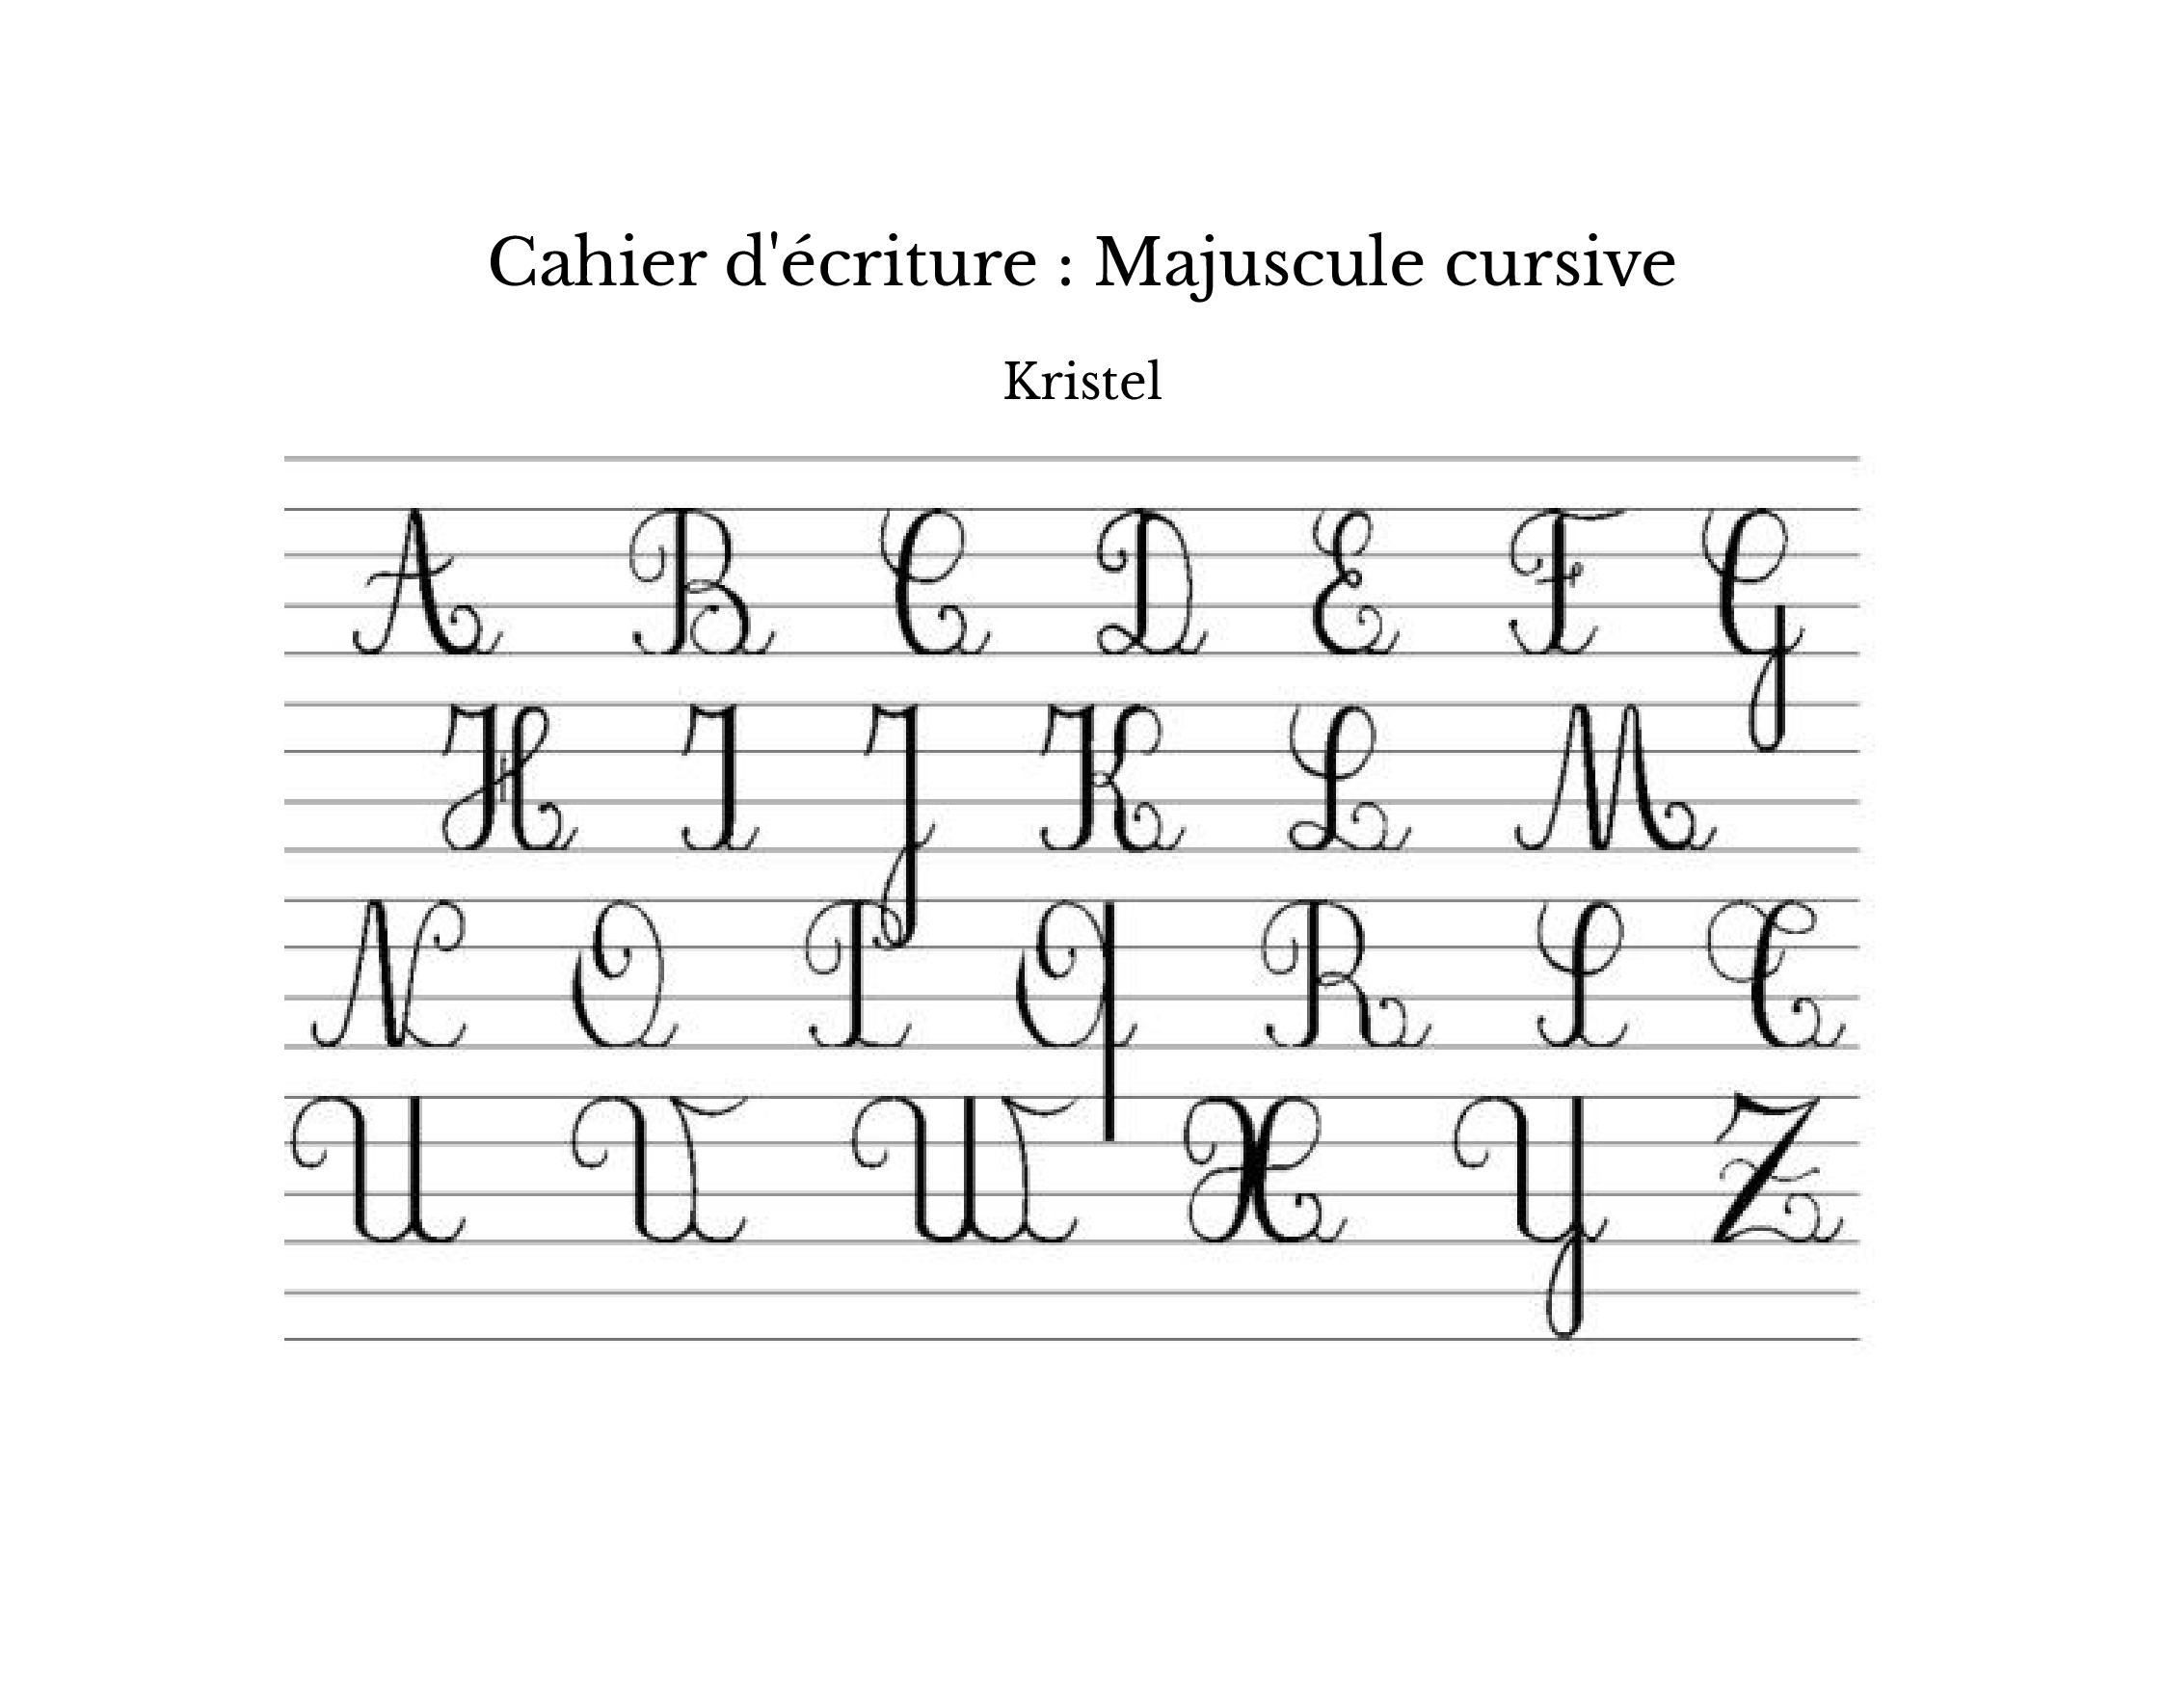 Cahier d'écriture : Majuscule cursive - Kristel